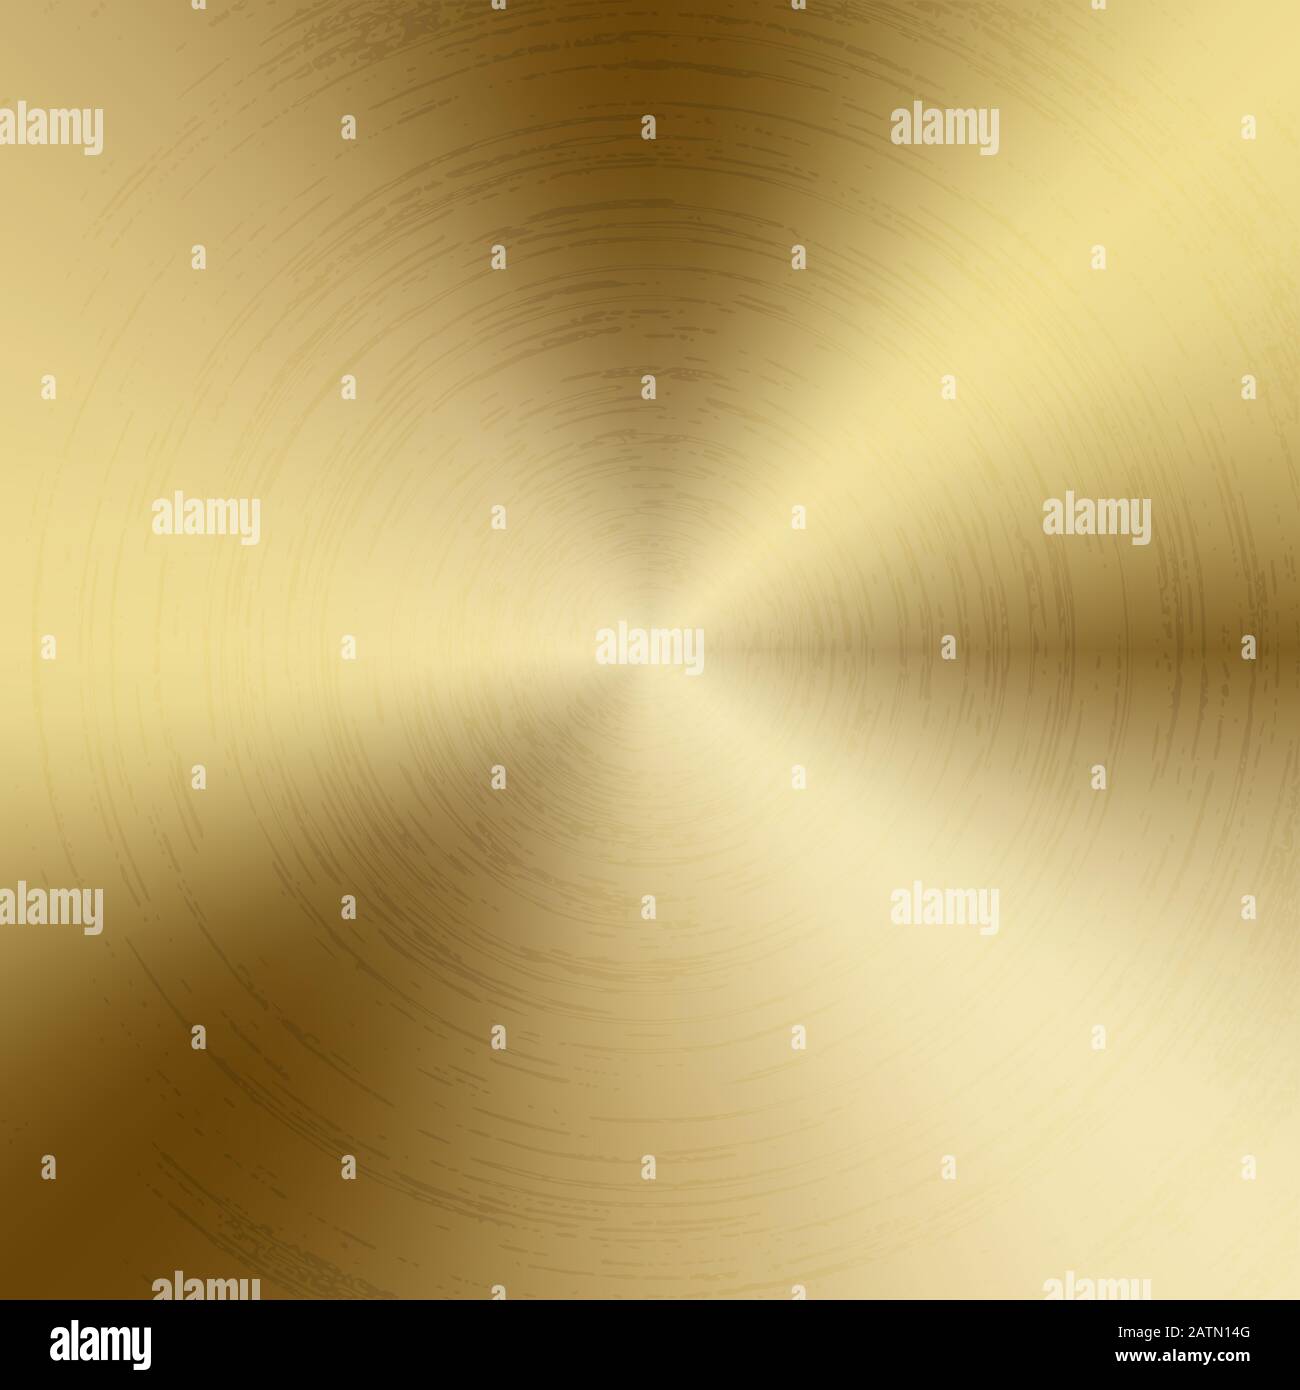 Struttura radiale lucidata oro metallo sfondo. Tecnologia vettoriale testurizzata oro colore sfondo con circolare lucido, spazzolato concentrico texture. Illustrazione Vettoriale